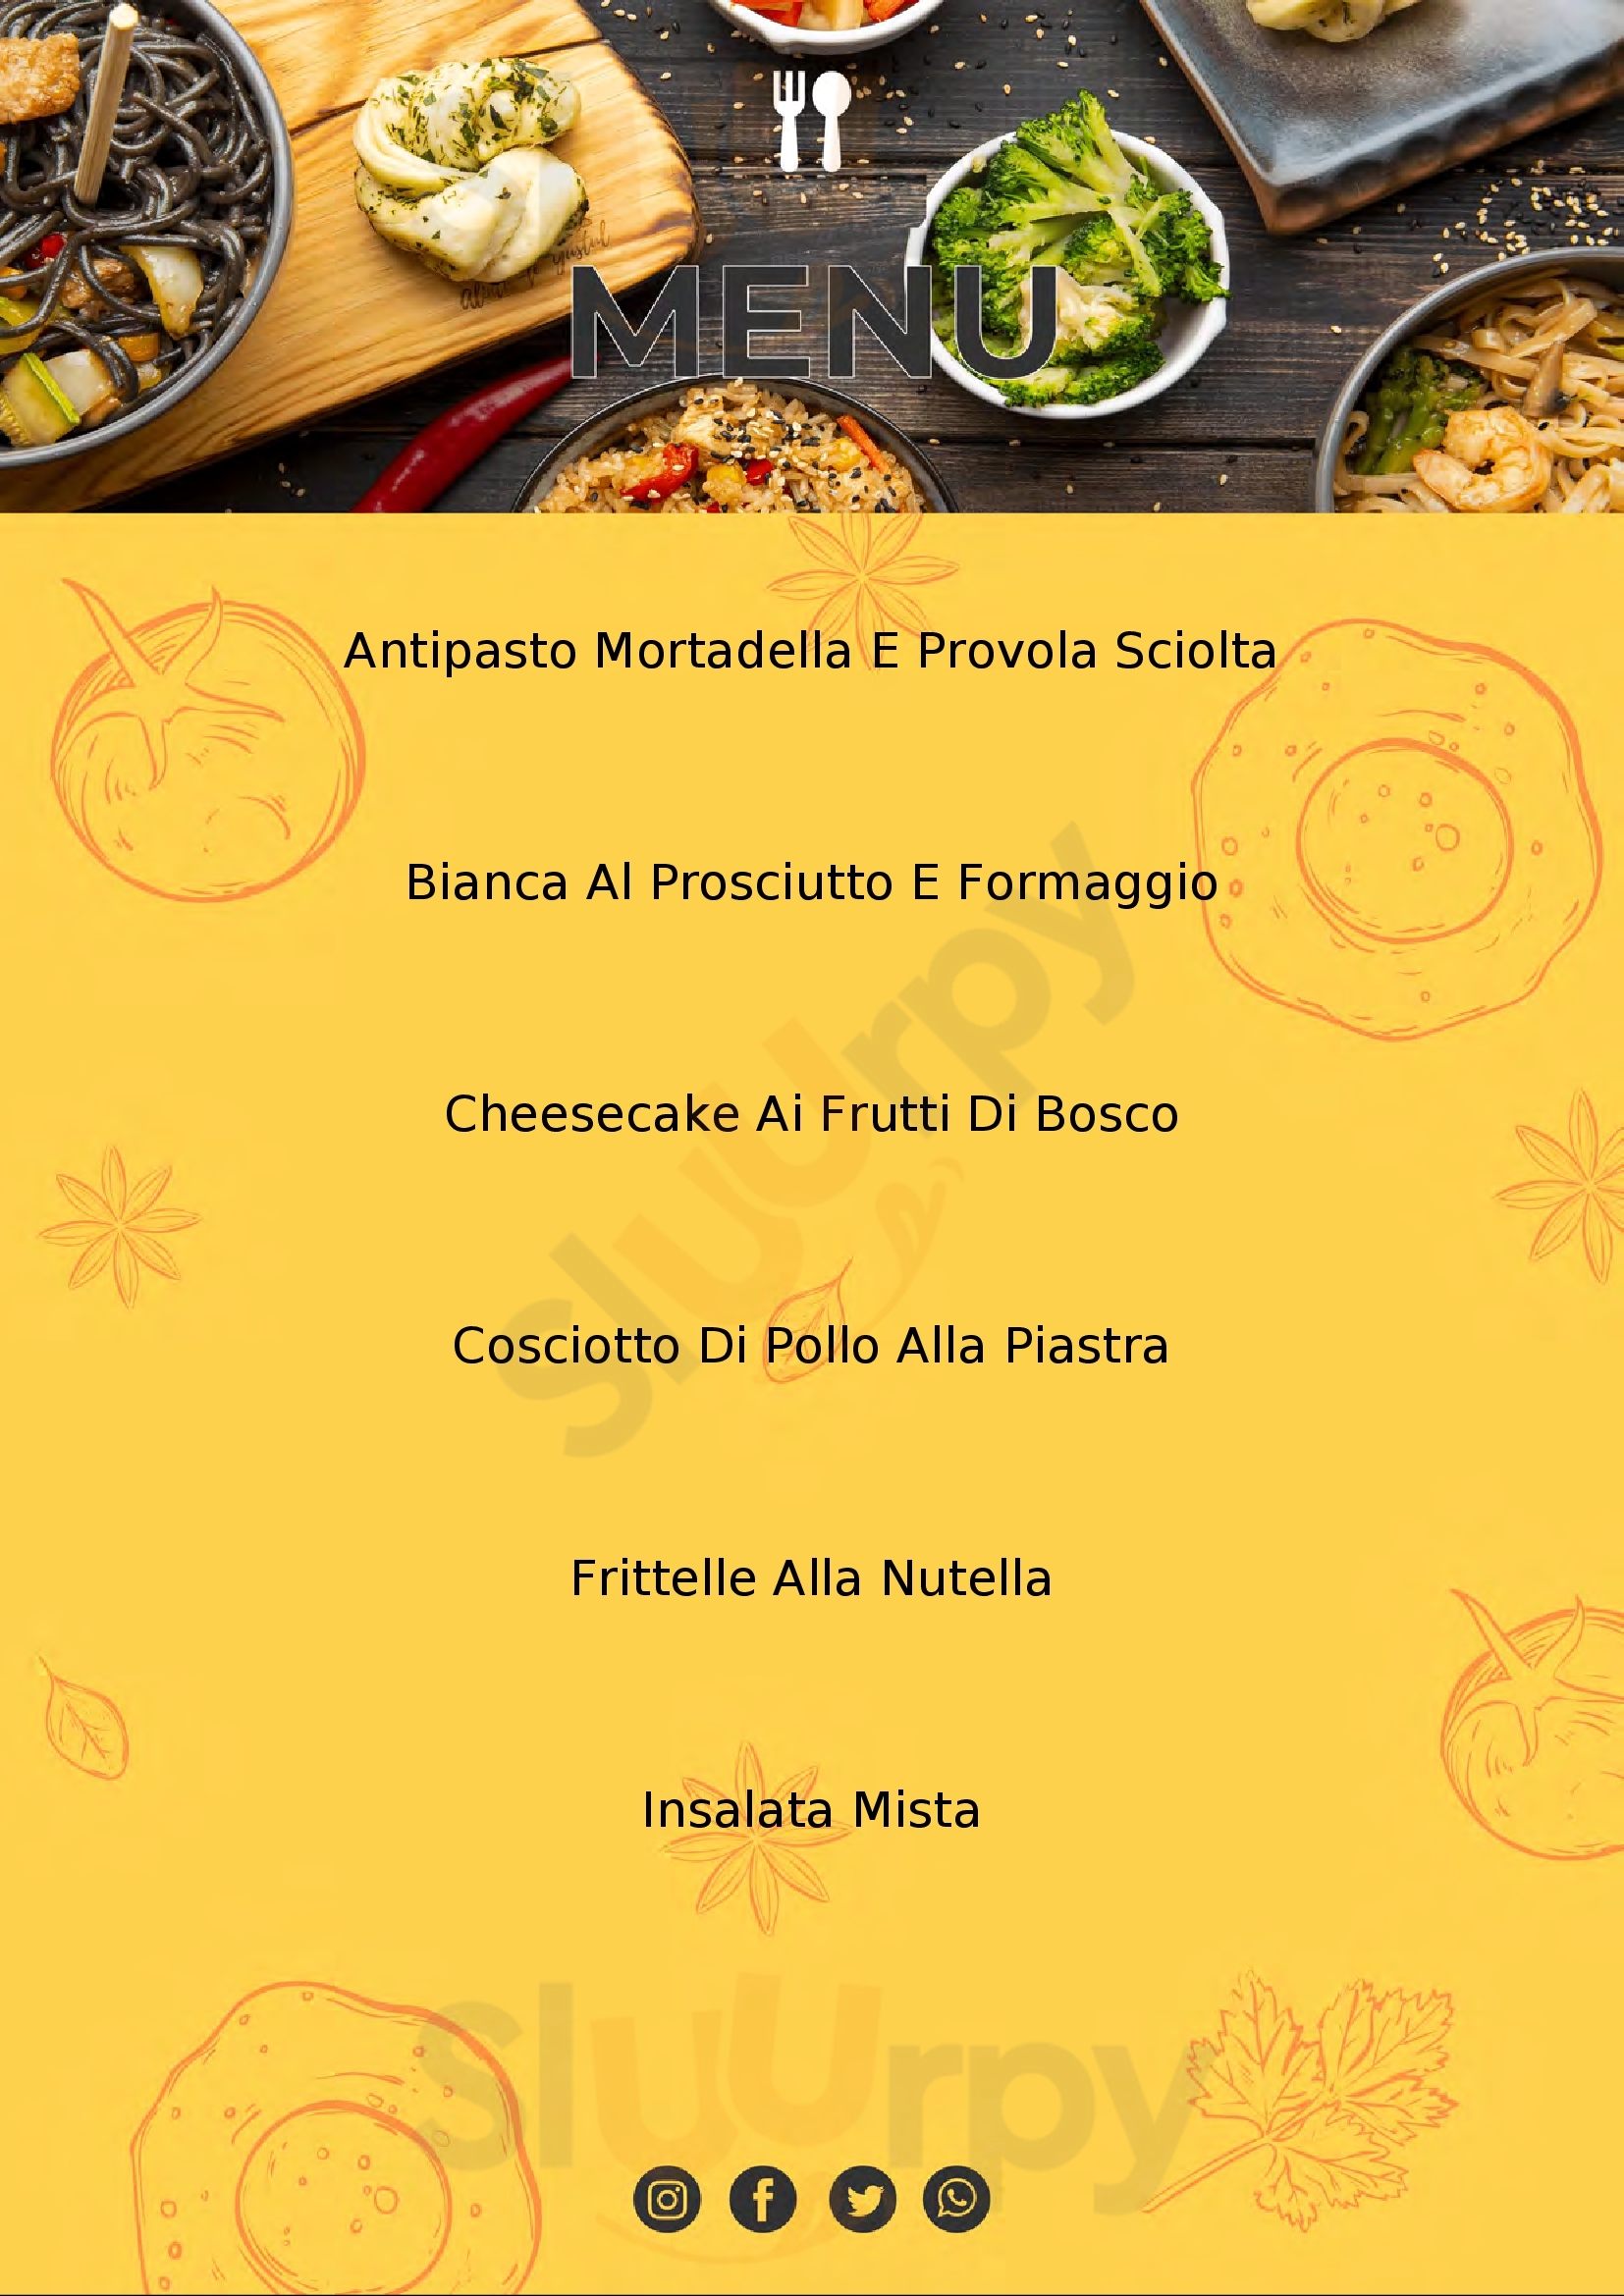 Rosato Pizza e Cucina Montecorvino Rovella menù 1 pagina